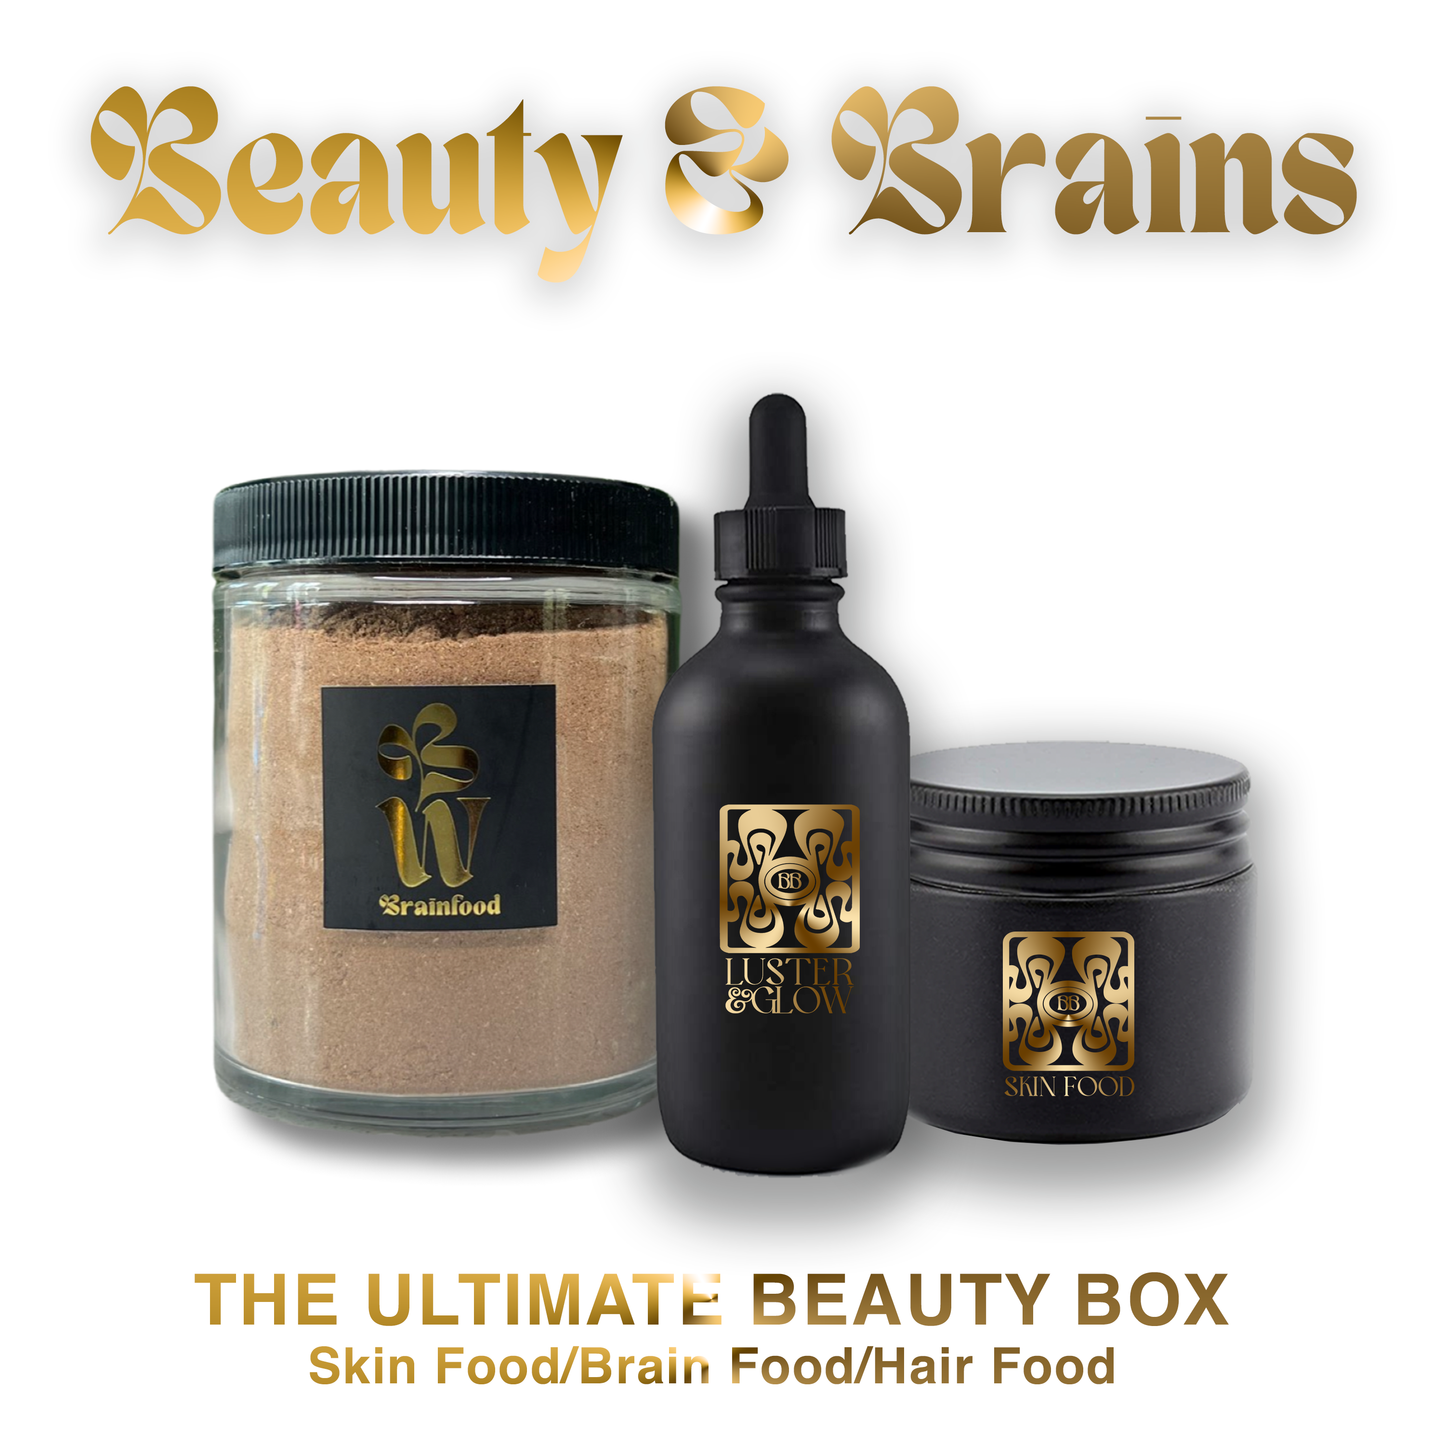 Beauty & Brains Box (The ultimate Beauty Box)